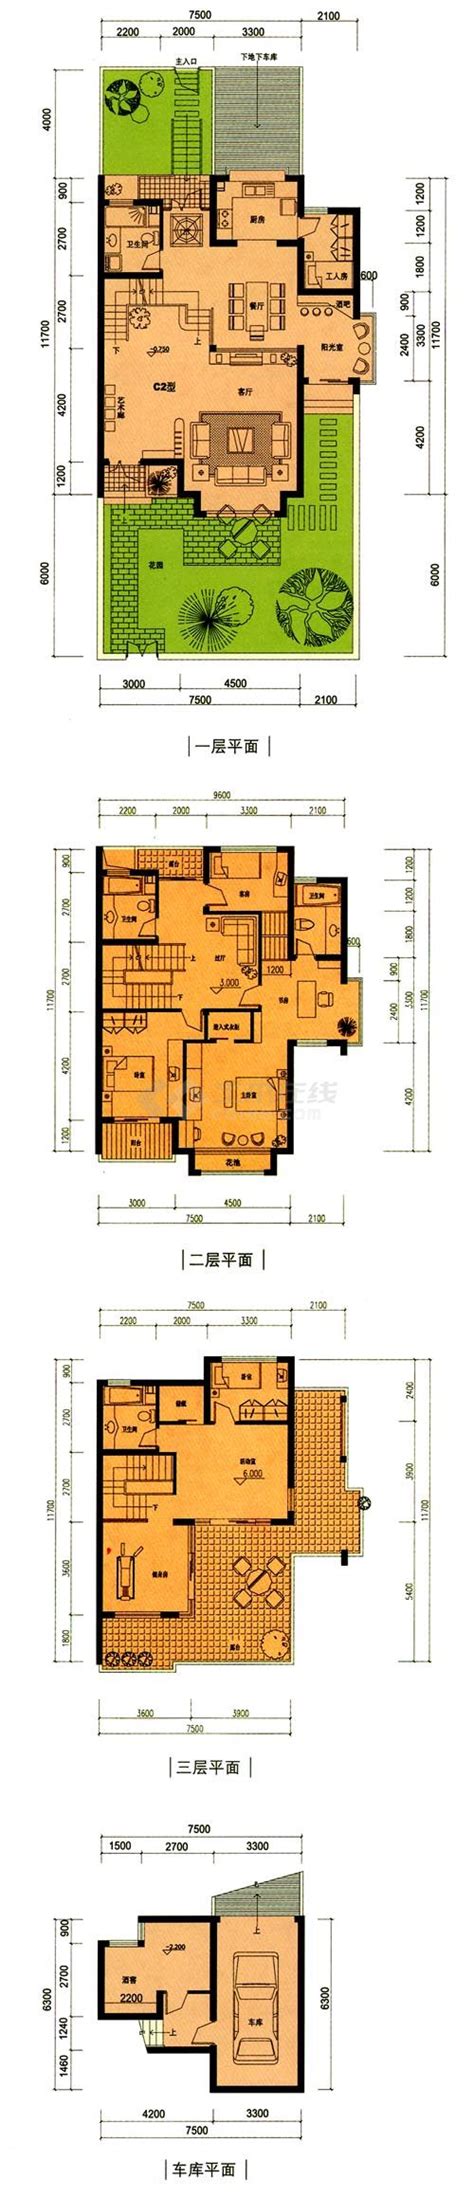 上海普陀区某居住区3层高档私人别墅平面设计CAD施工图_居住建筑_土木在线